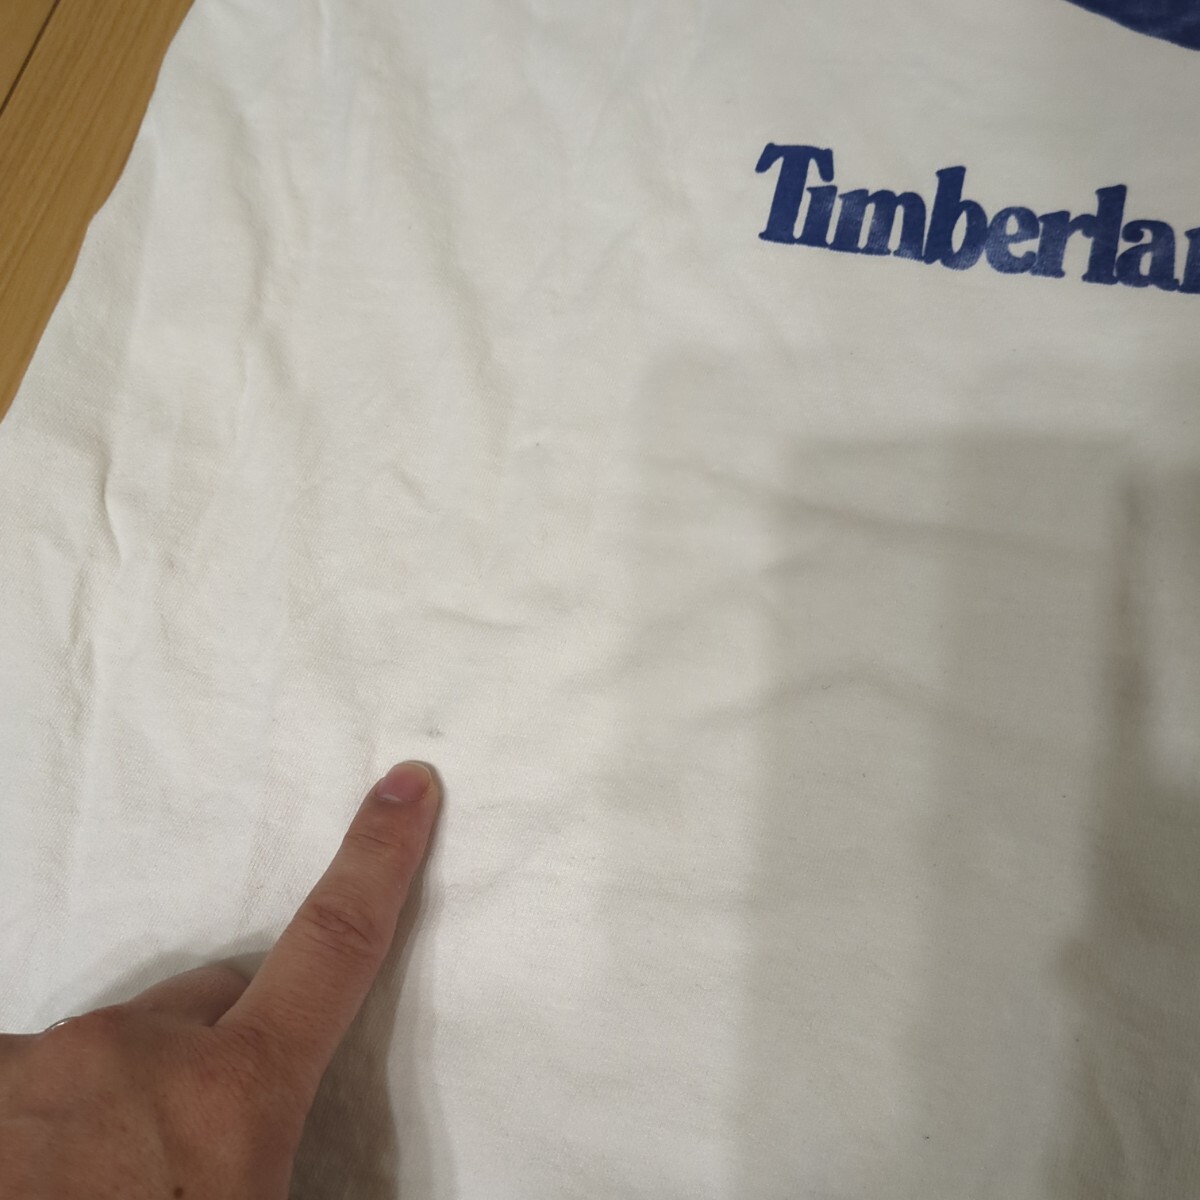  Timberland T-shirt 90s big size L size 